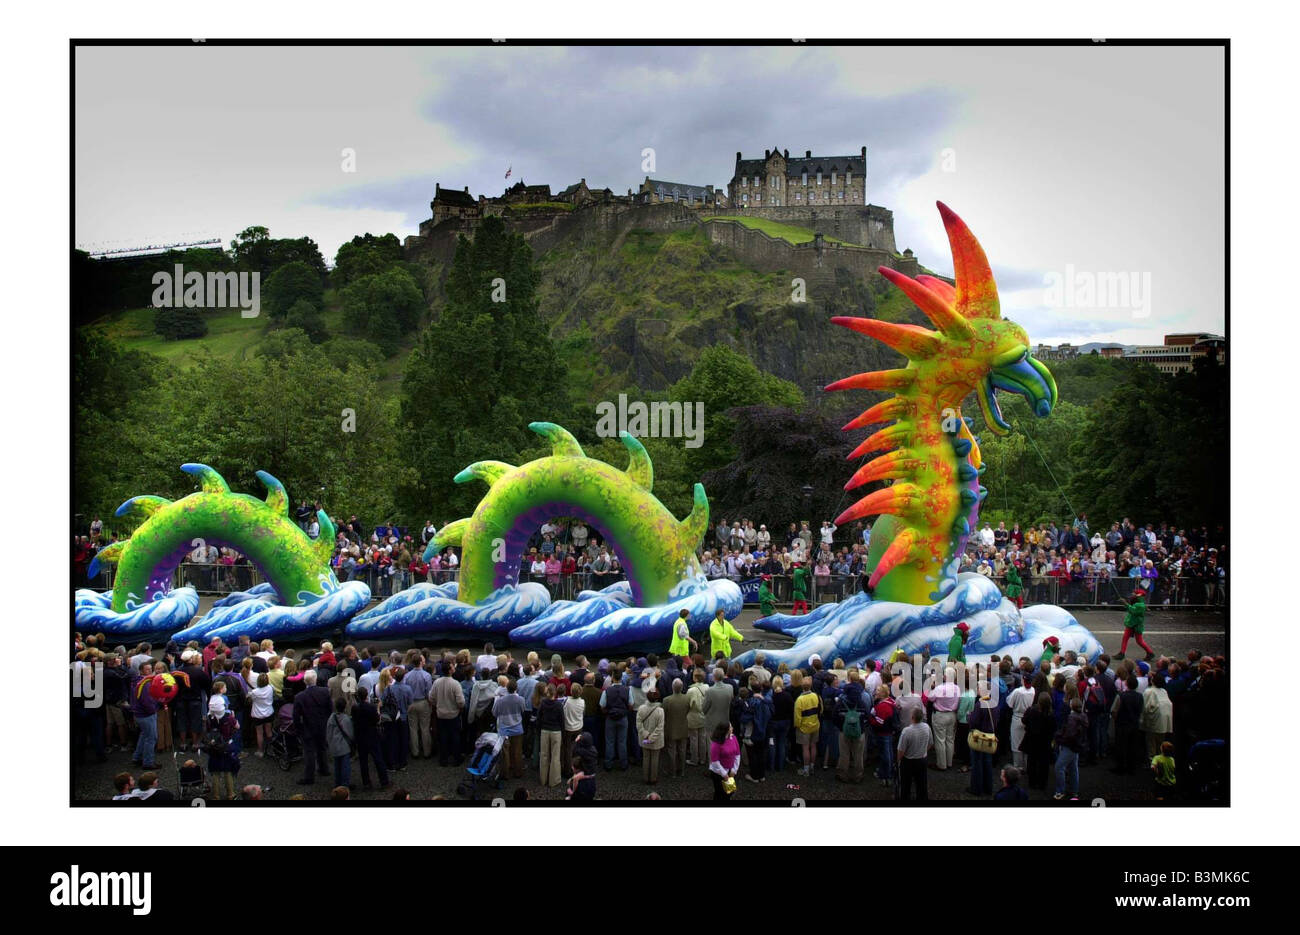 Edinburgh Festival Août 2001 calvacade festival avec la star du spectacle d Irlande réponse à la Loch Ness le Paca un croisement entre géant et serpent mirrorpix chèvre cheval Banque D'Images